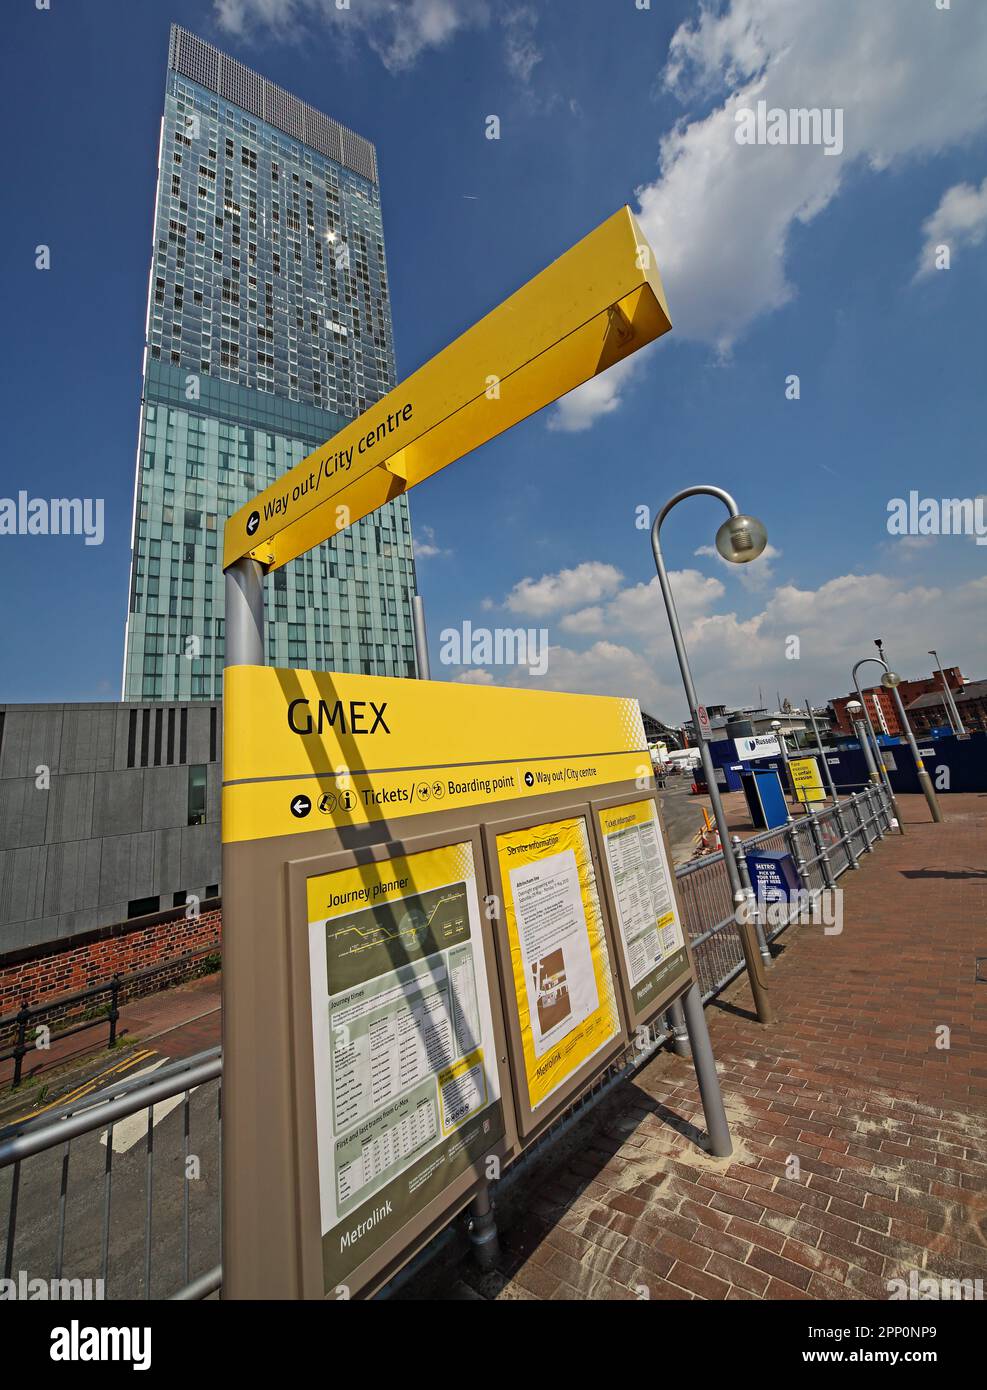 Piattaforma del tram GMEX Metrolink Manchester, ora Deansgate Castlefield, centro di Manchester, Inghilterra, Regno Unito, M3 4LG Foto Stock